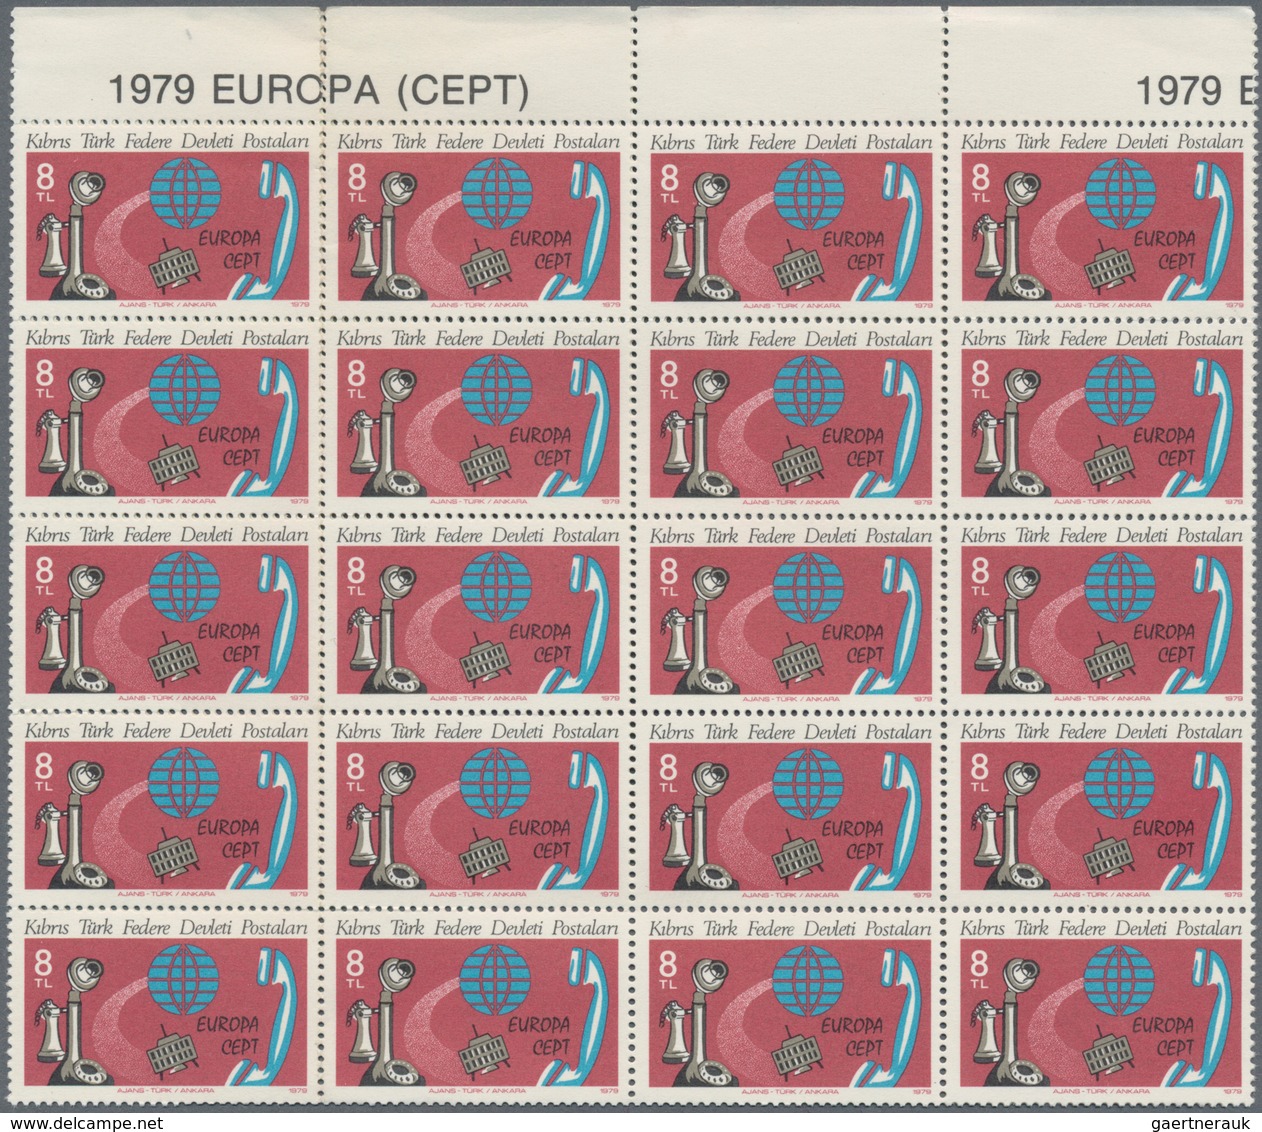 Thematik: Marke Auf Marke / Stamp On Stamp: 1979, Europa CEPT Stamps Of Faroe Islands And Northern C - Briefmarken Auf Briefmarken